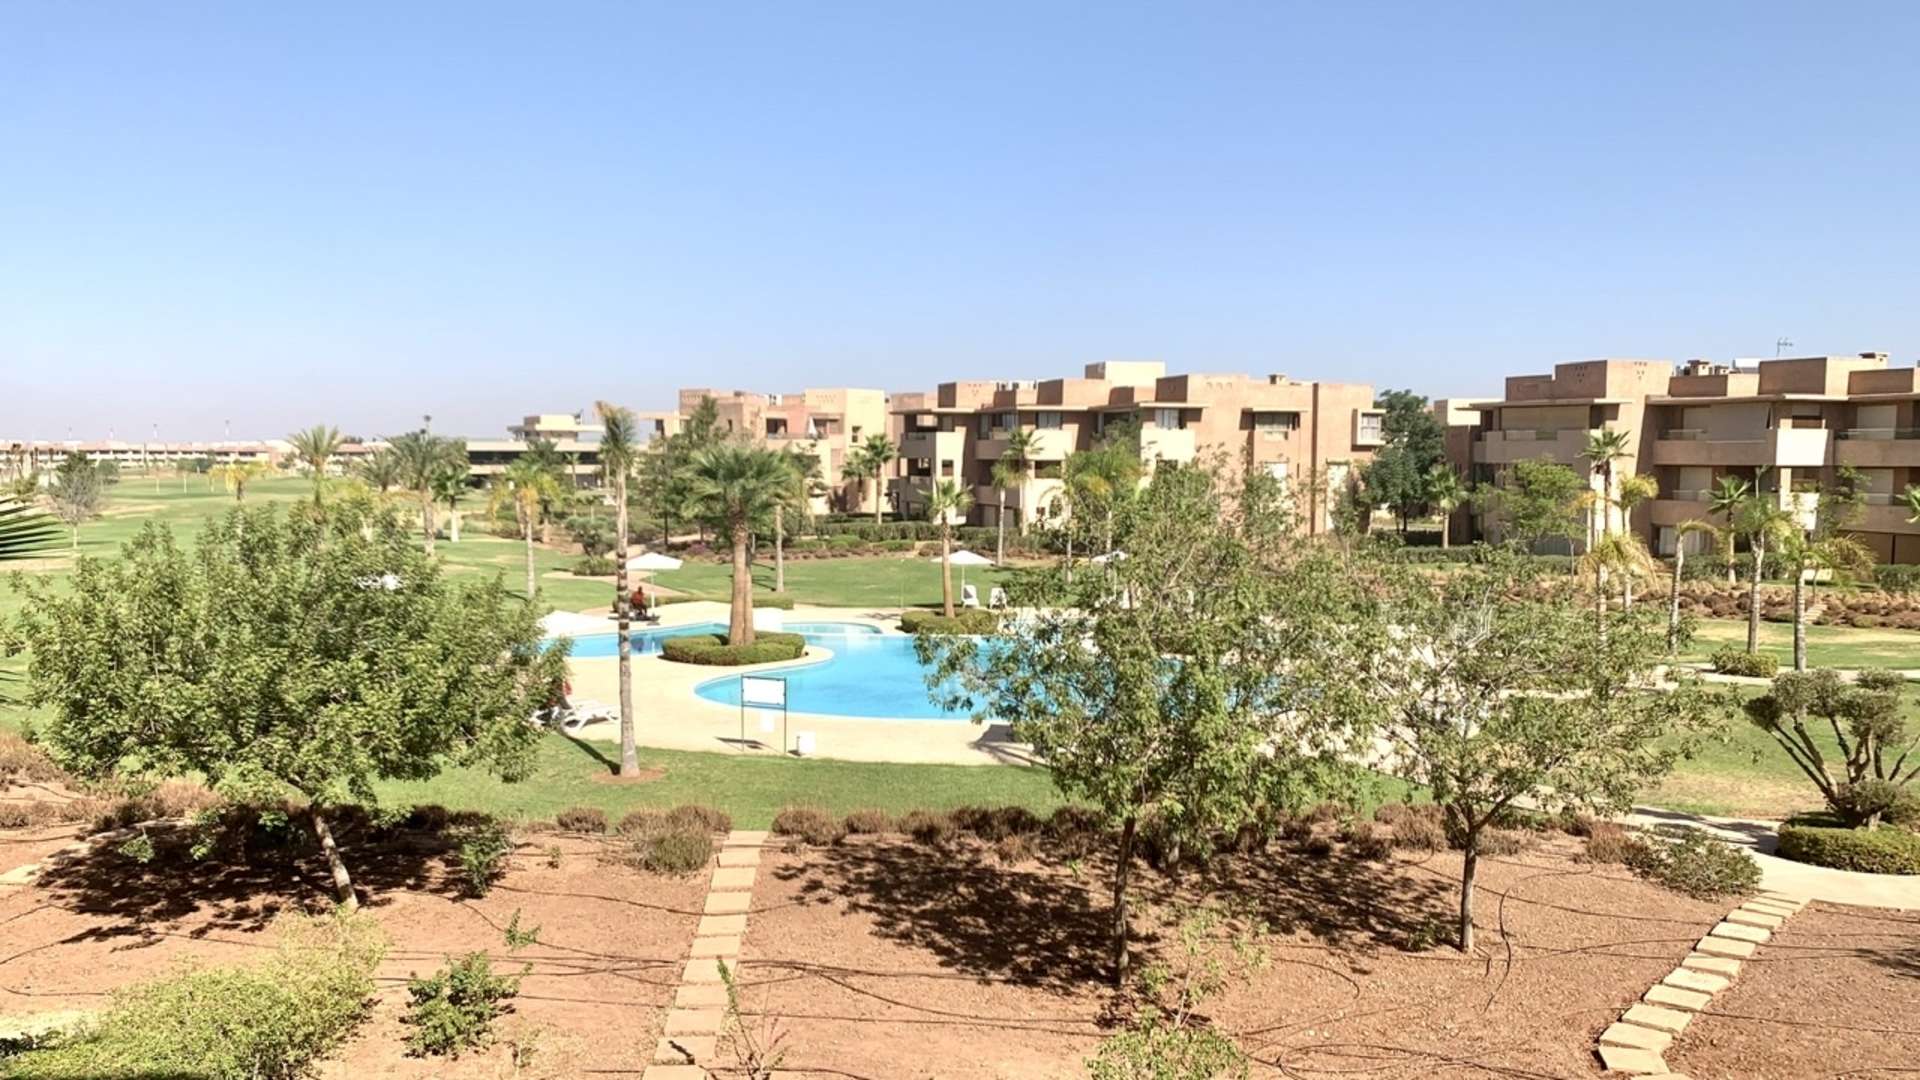 Location longue durée ,Appartement,Appartement neuf avec magnifique terrasse couverte et fermée offrant une vue sur un paysage agréable,Marrakech,Golf Prestigia